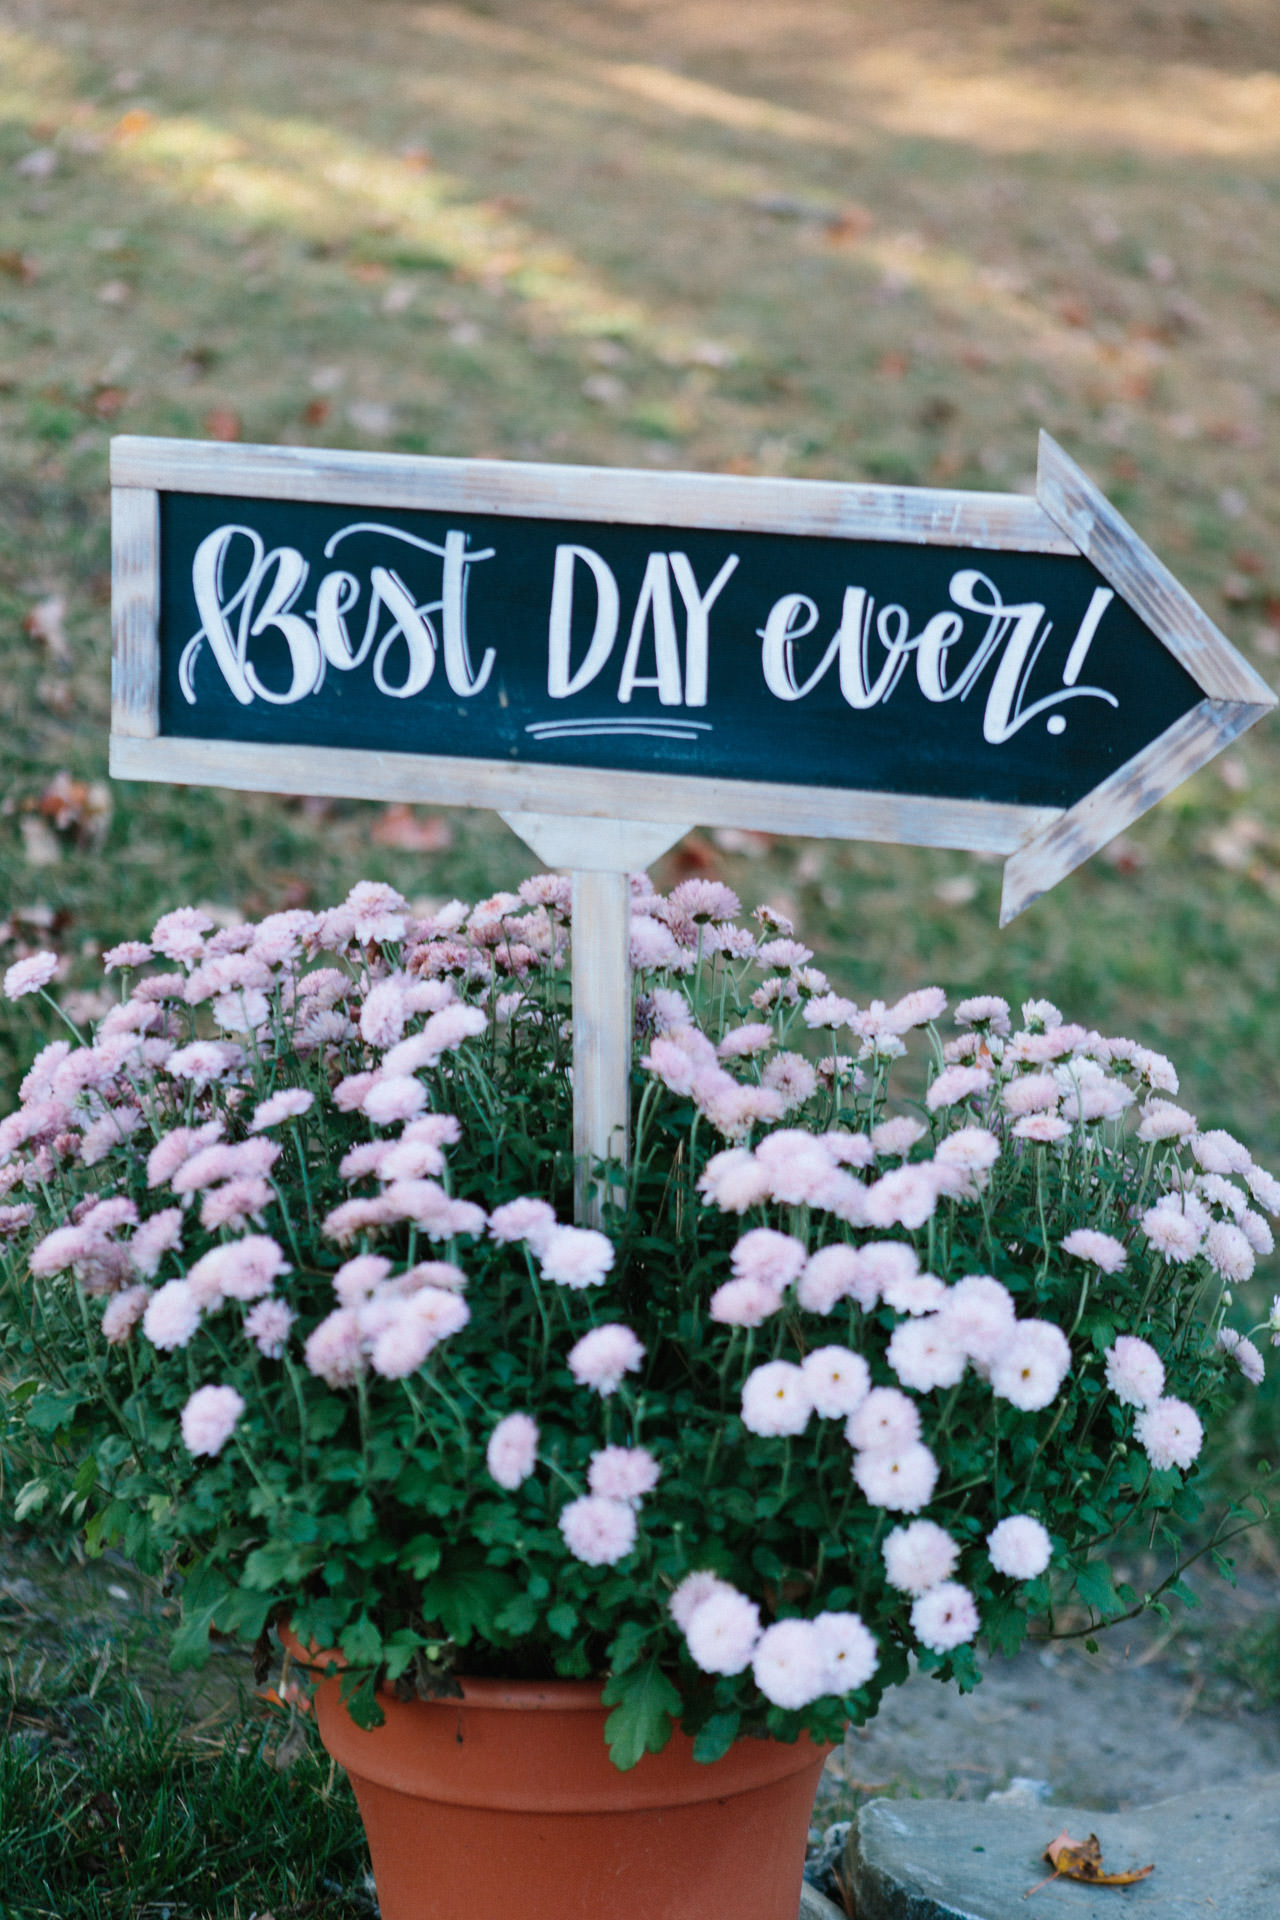 Custom wedding signage in a flower pot